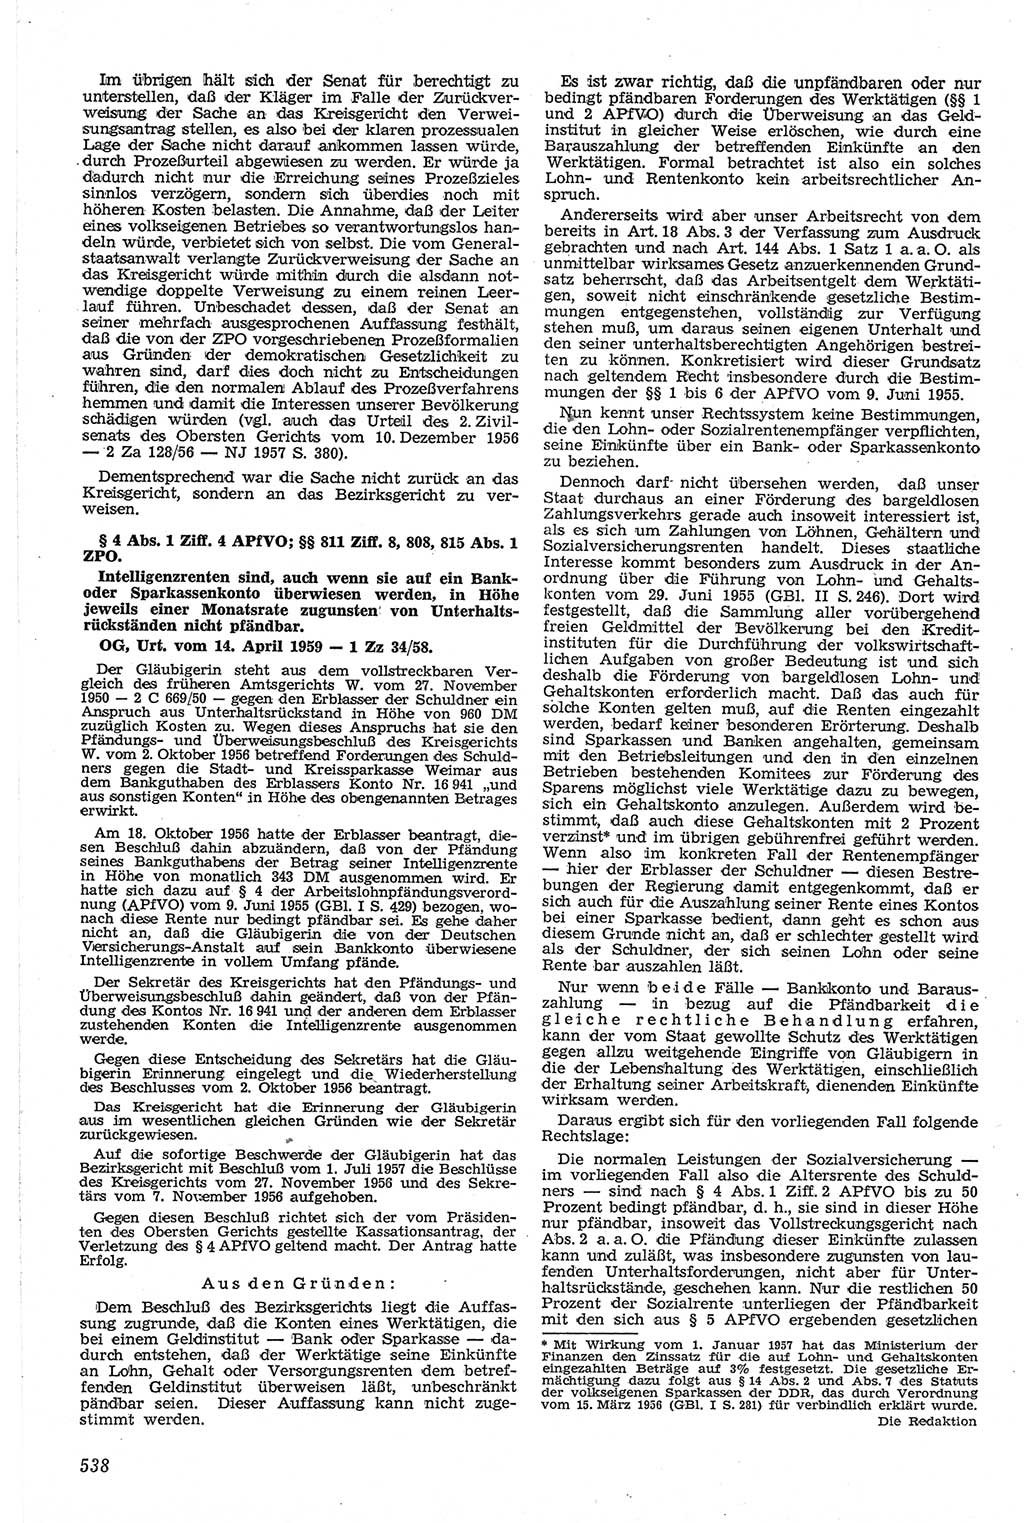 Neue Justiz (NJ), Zeitschrift für Recht und Rechtswissenschaft [Deutsche Demokratische Republik (DDR)], 13. Jahrgang 1959, Seite 538 (NJ DDR 1959, S. 538)